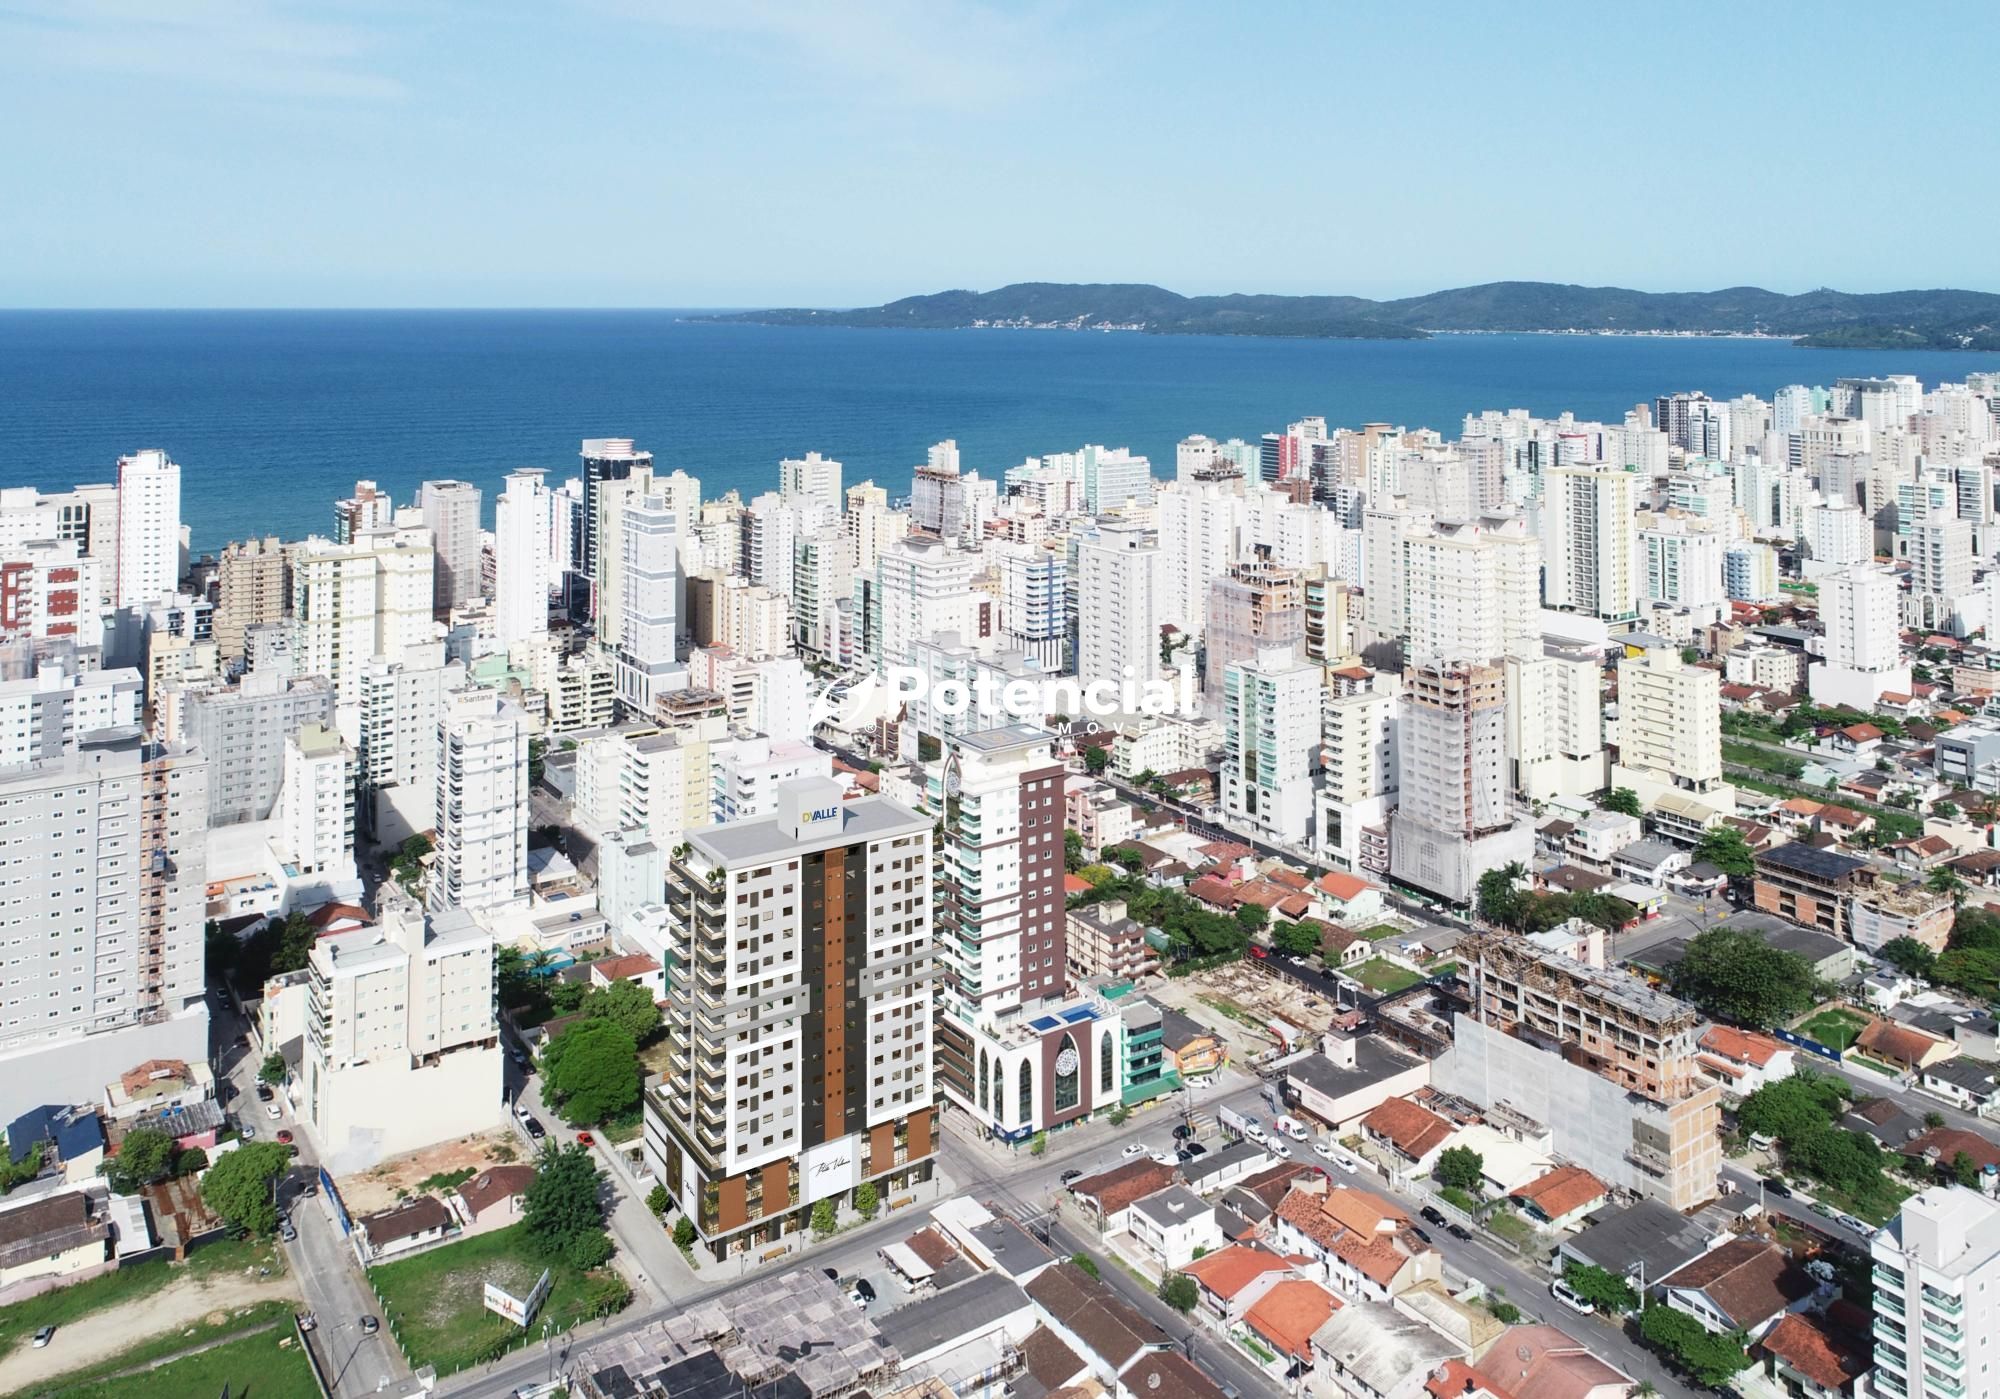 Vista aérea do Empreendimento | Empreendimento Porto Valência